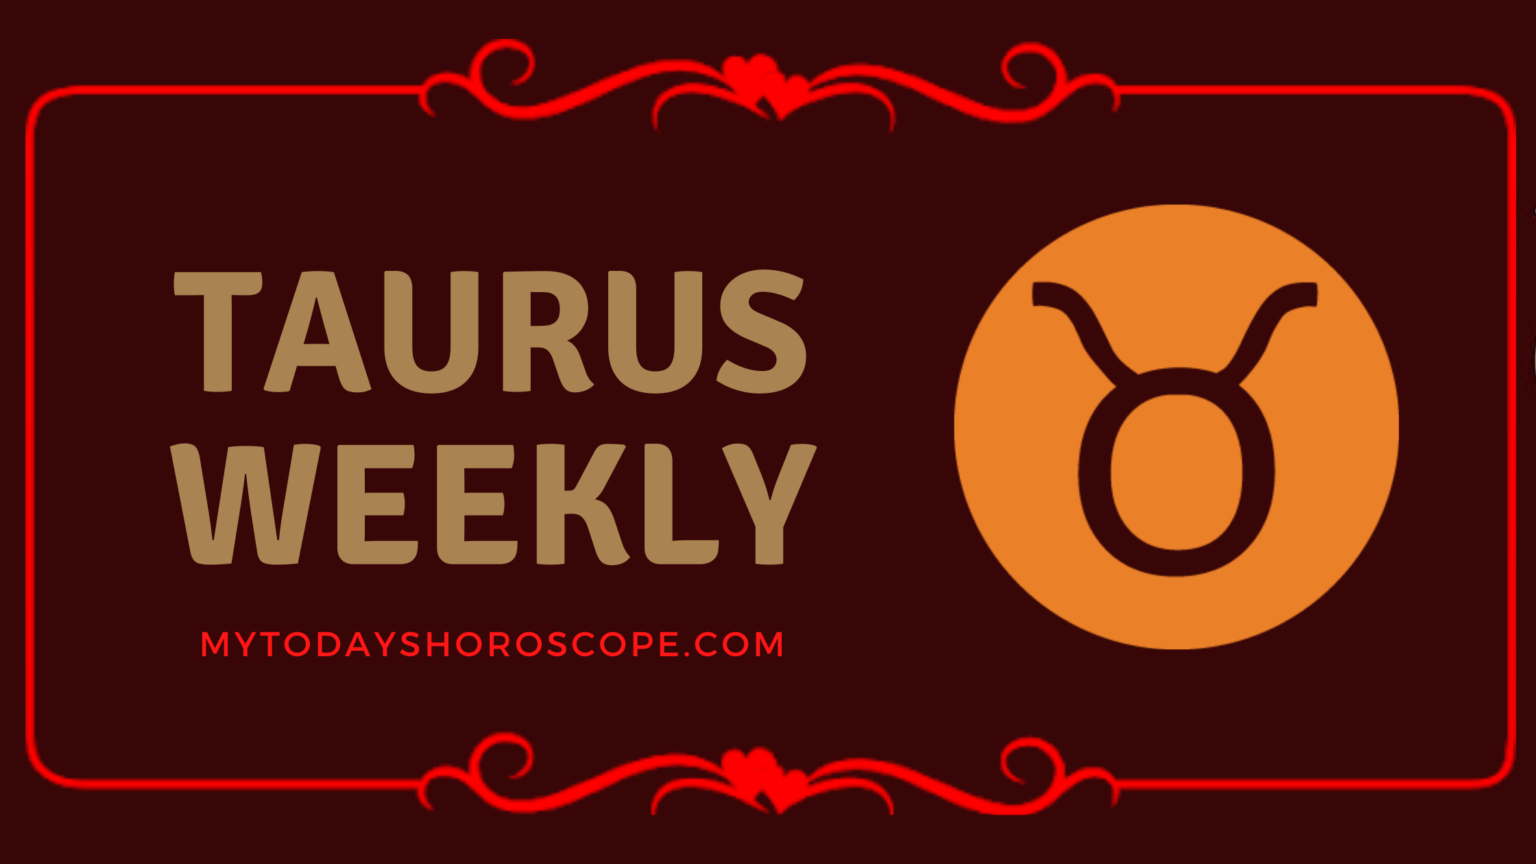 TAURUS WEEKLY HOROSCOPE